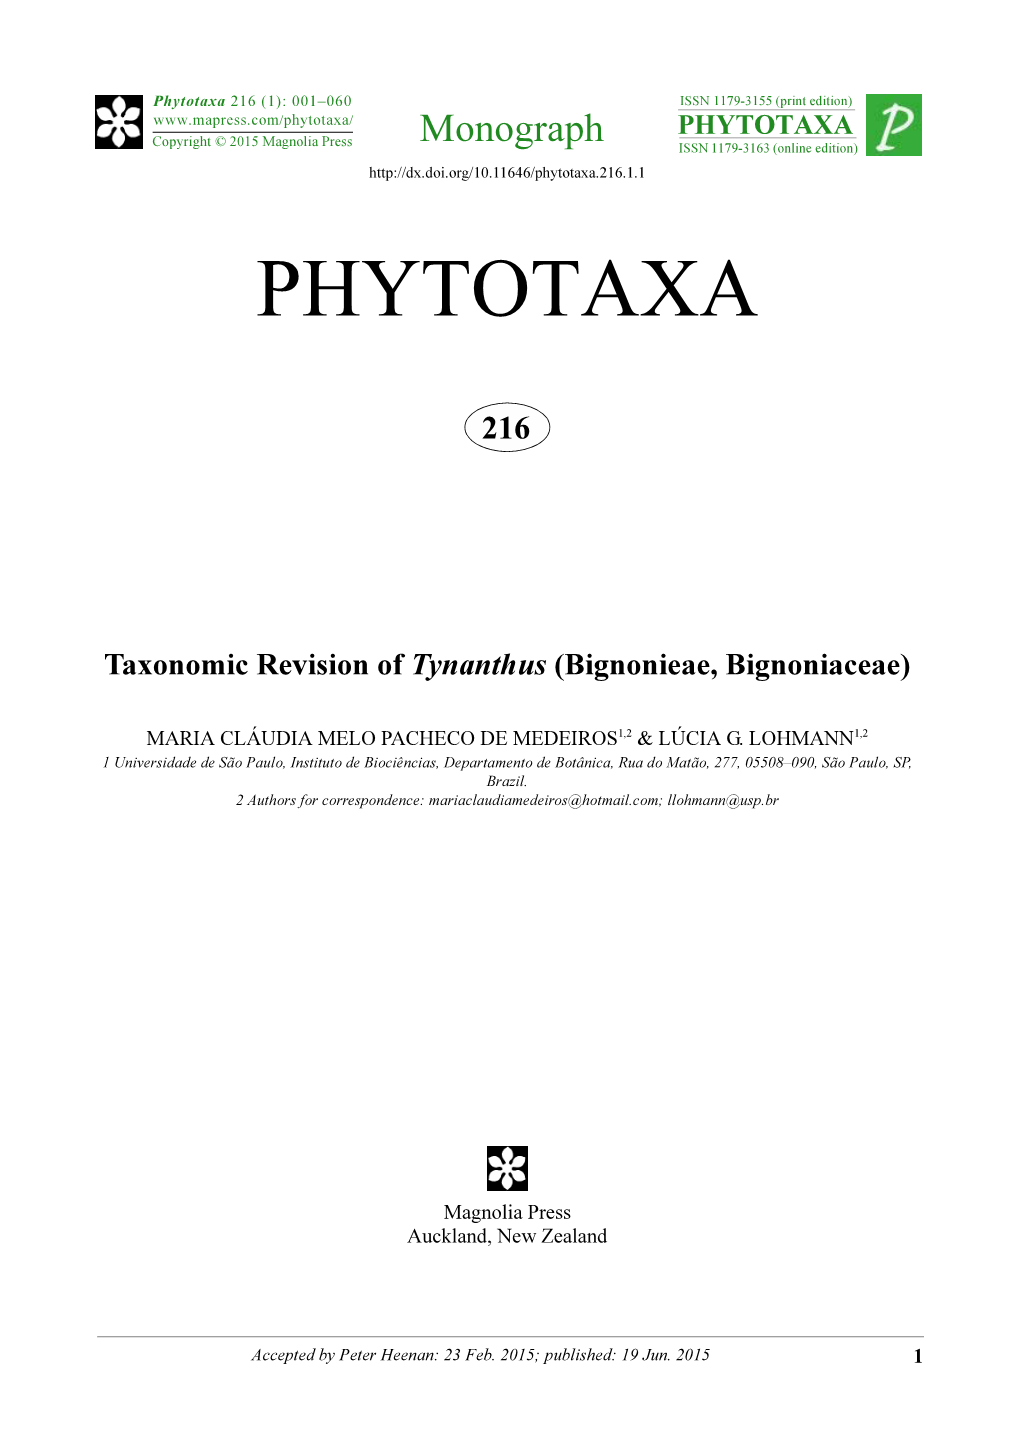 Taxonomic Revision of Tynanthus (Bignonieae, Bignoniaceae)